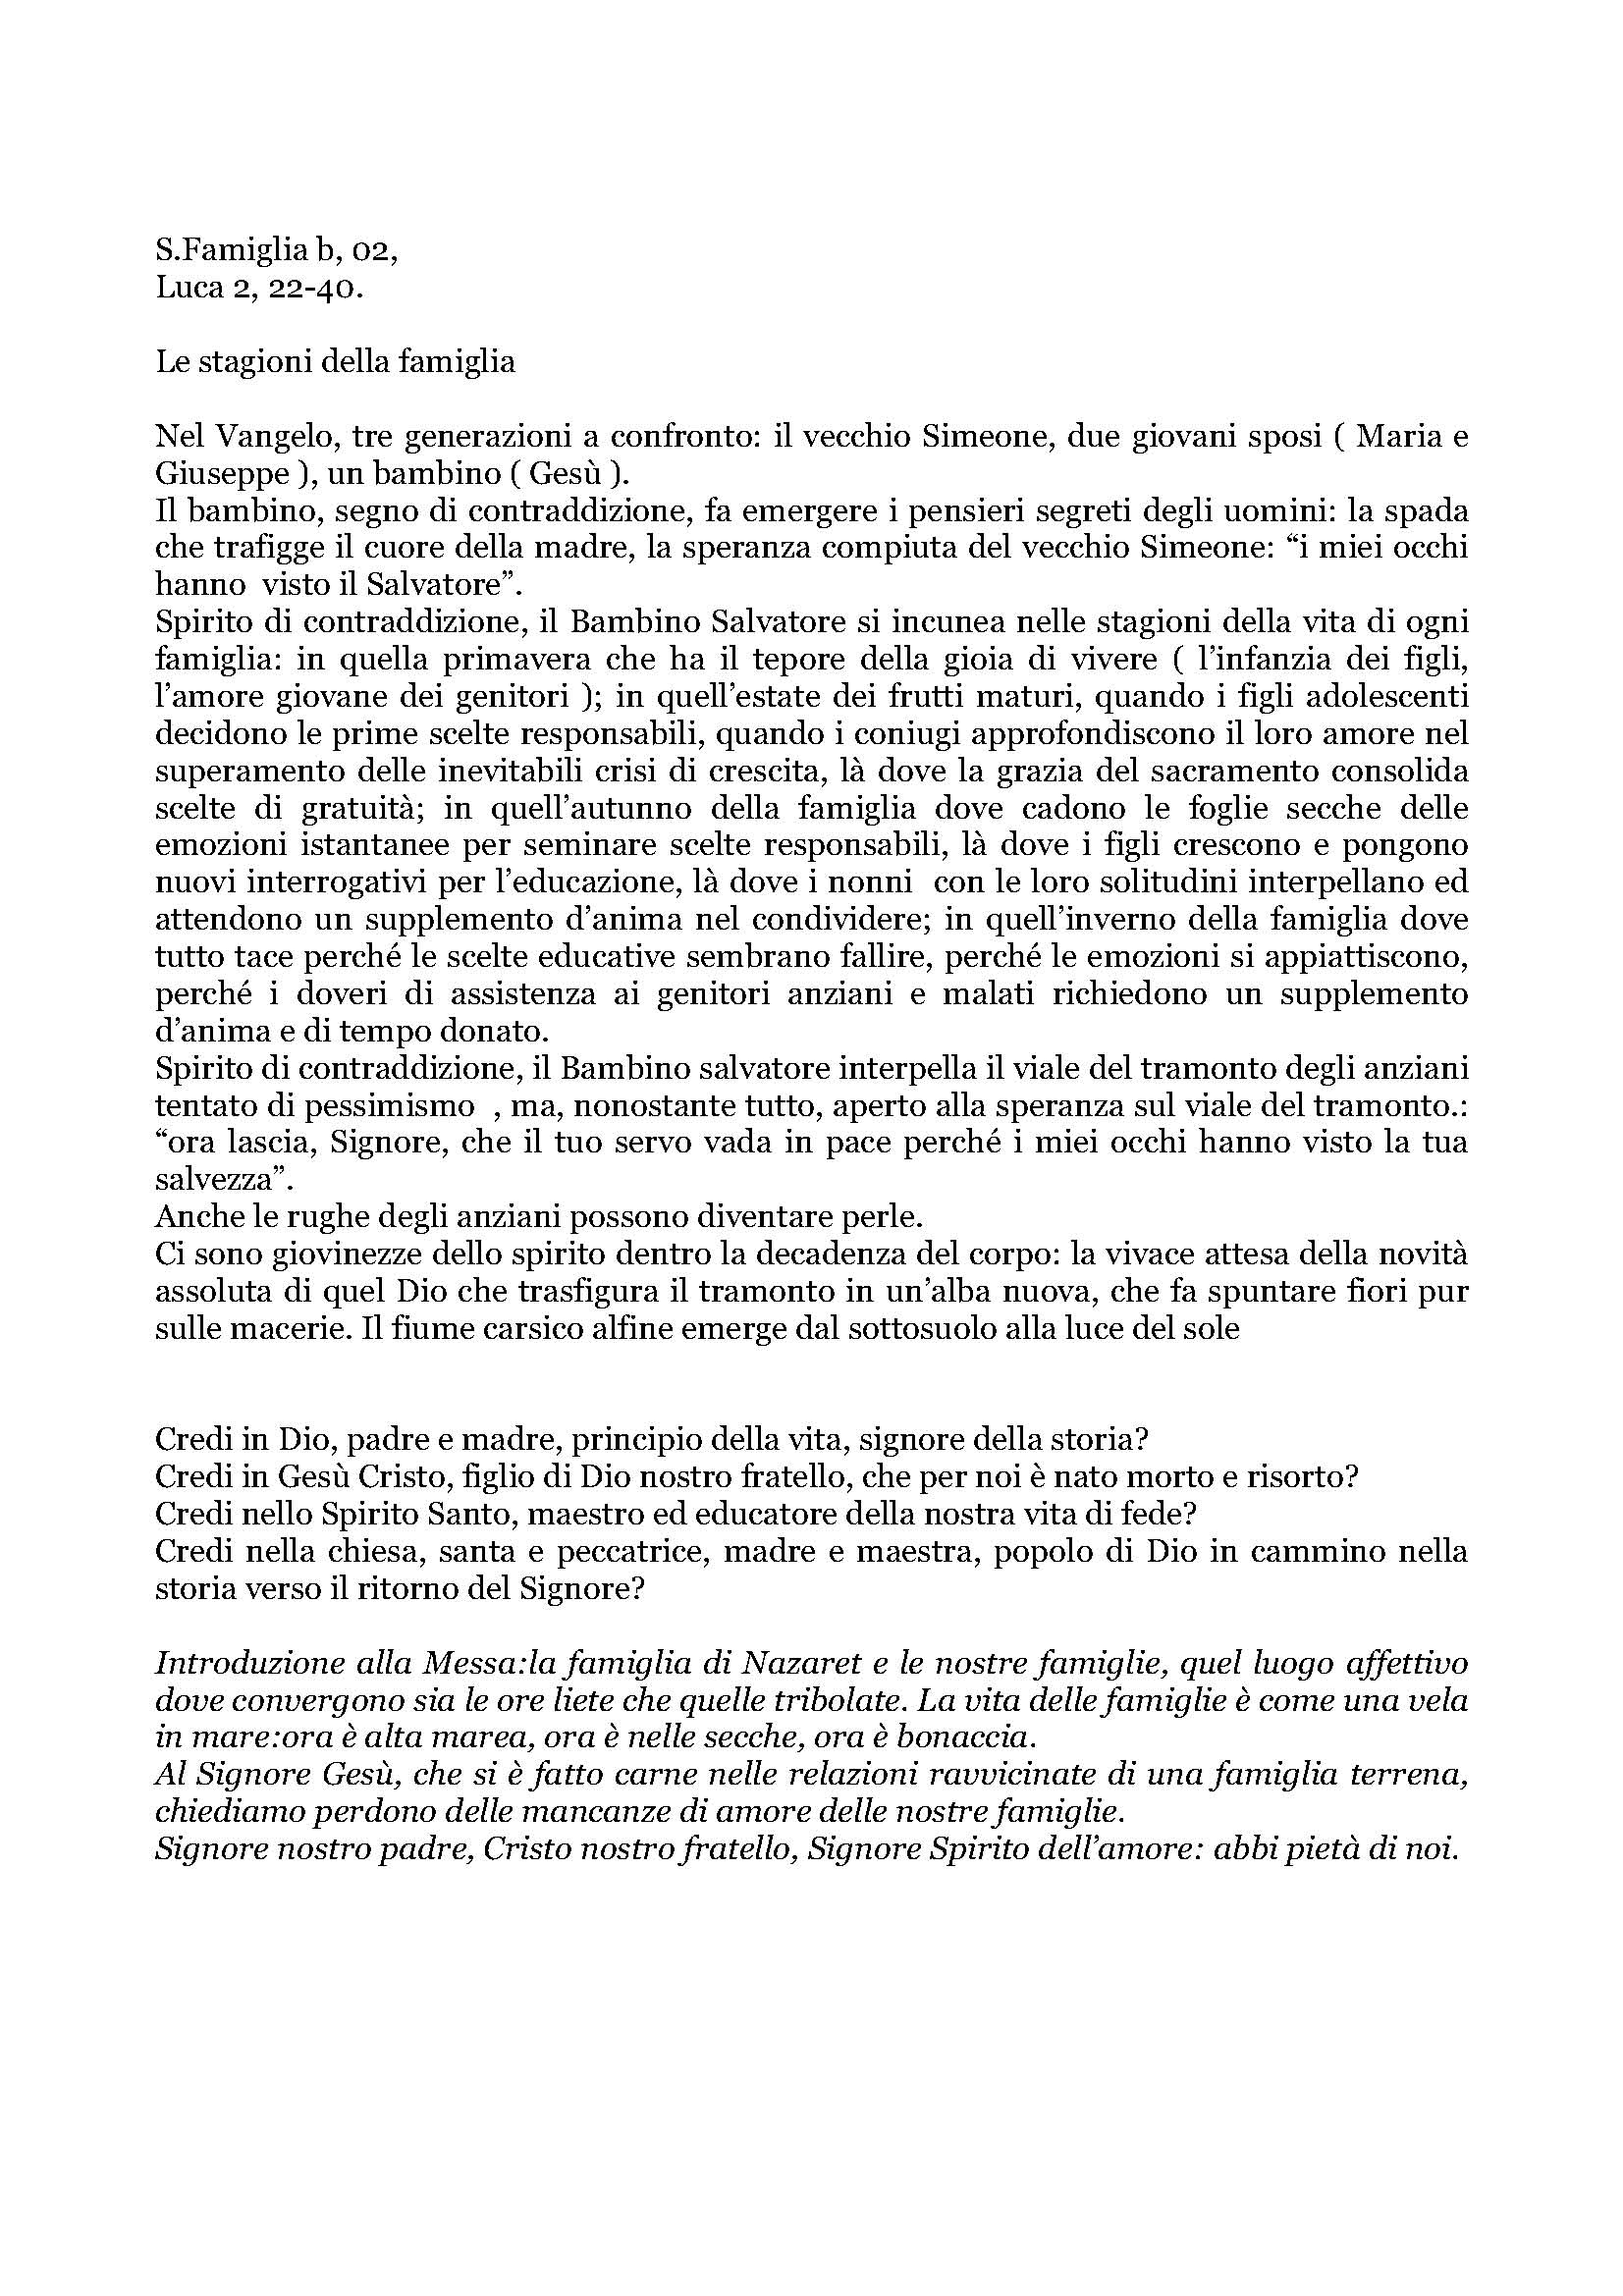 Le_stagioni_della_Famiglia_02.pdf